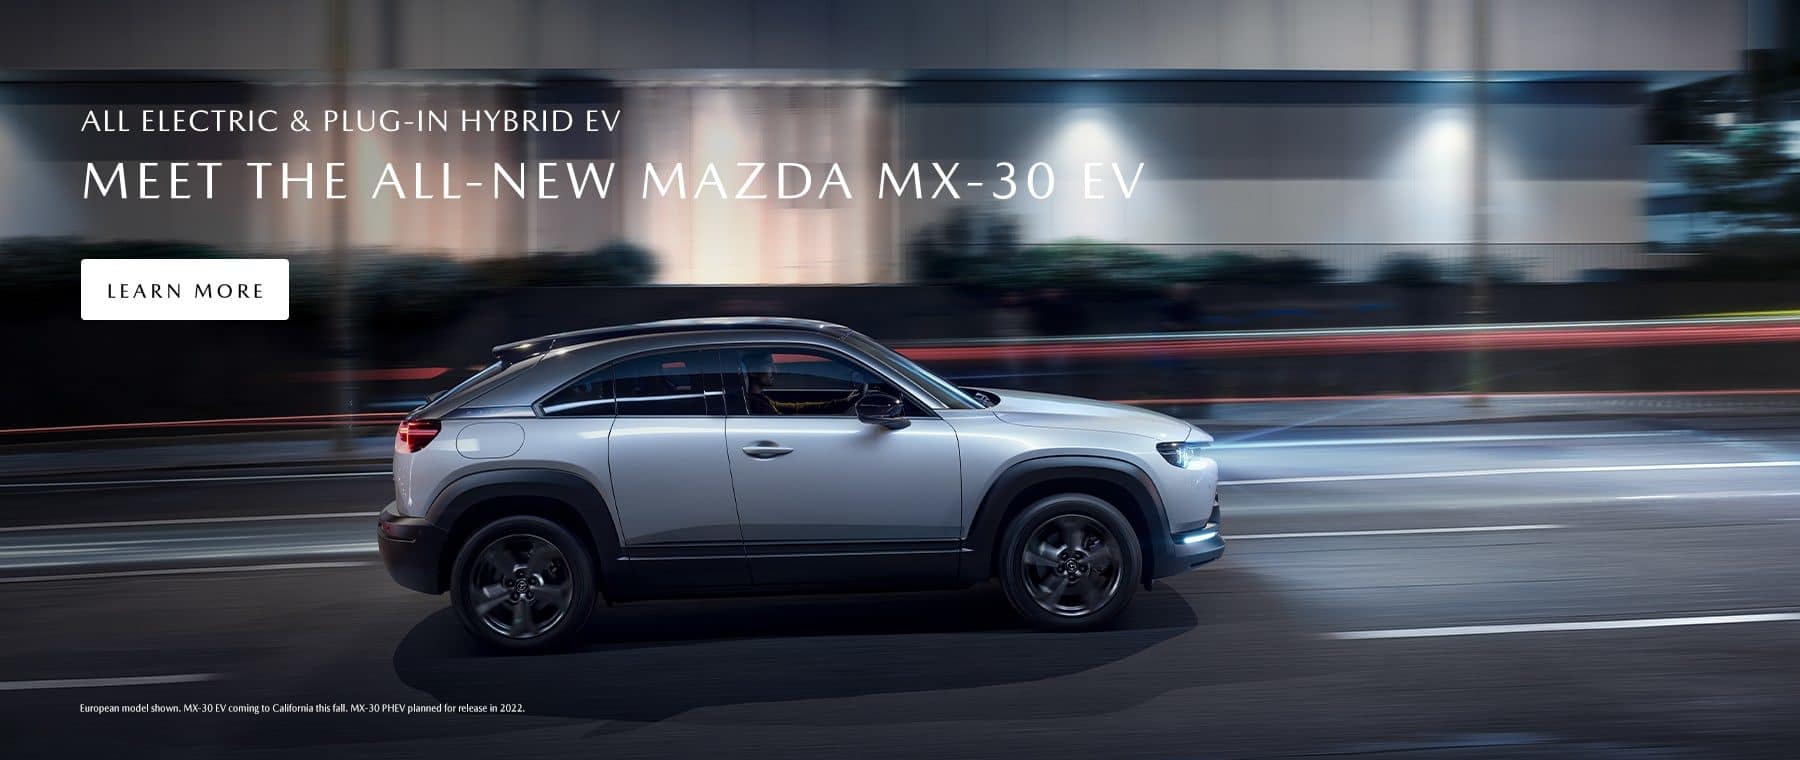 The all-new Mazda MX-30 EV